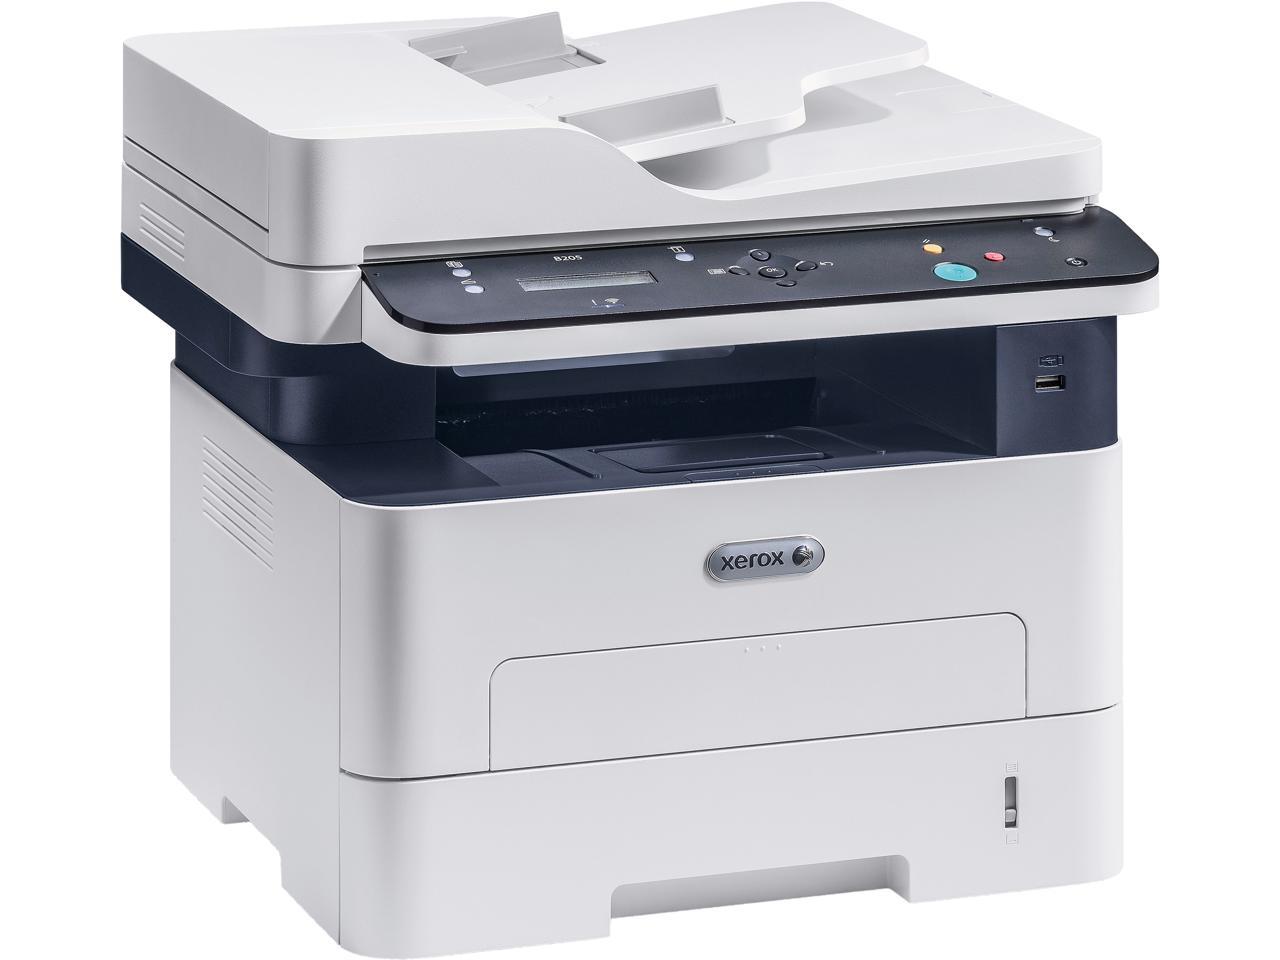 Xerox B205/NI MFP Wi-Fi Multifunction Printer